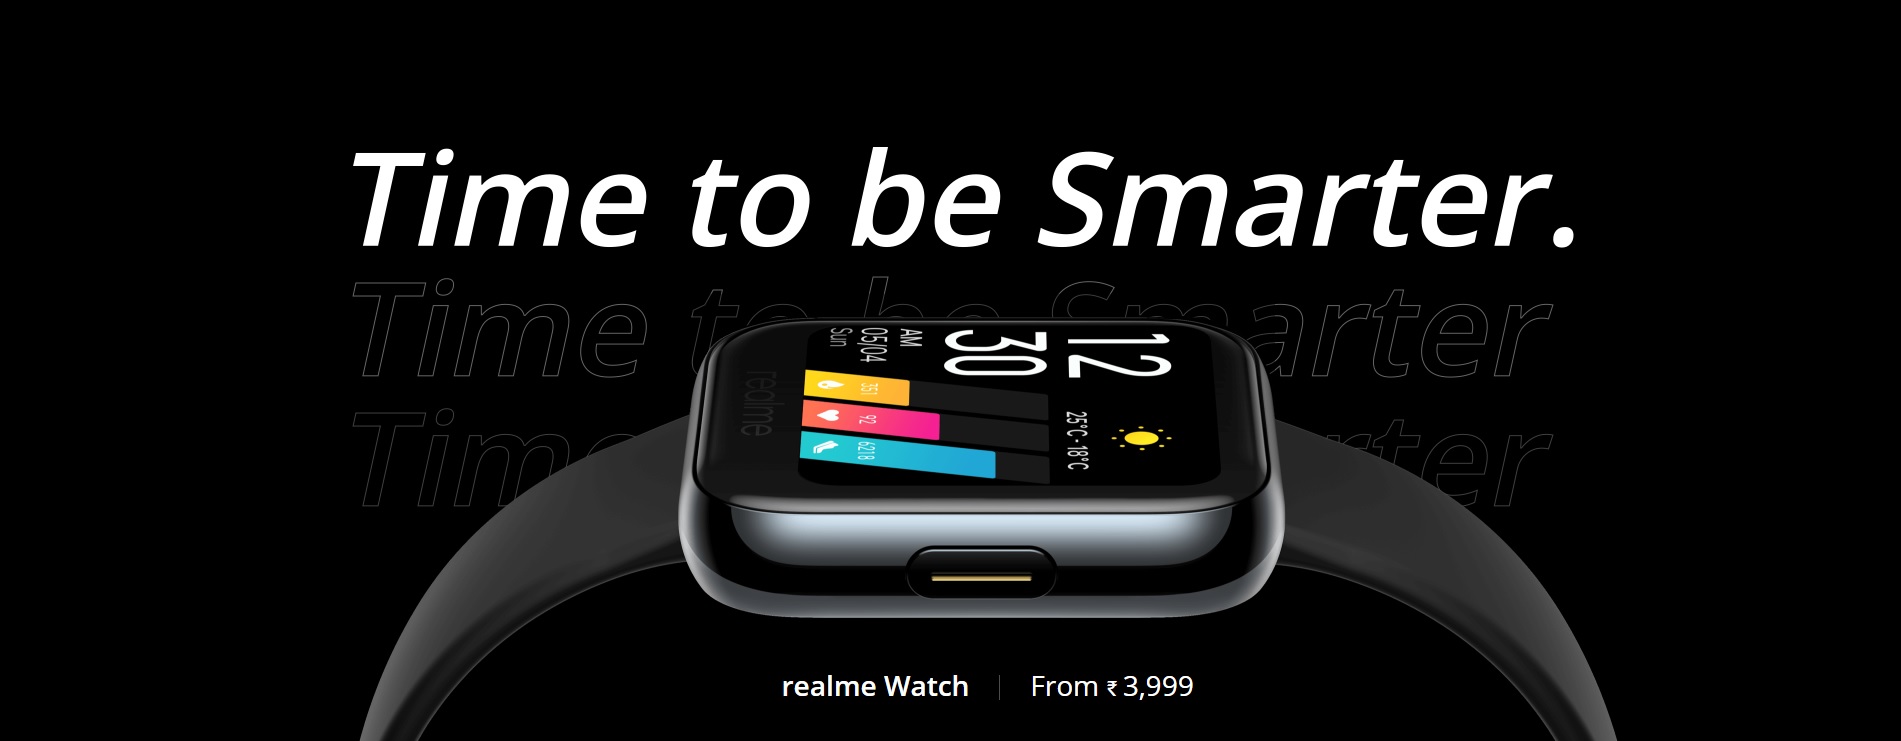 realme Watch smartwatch